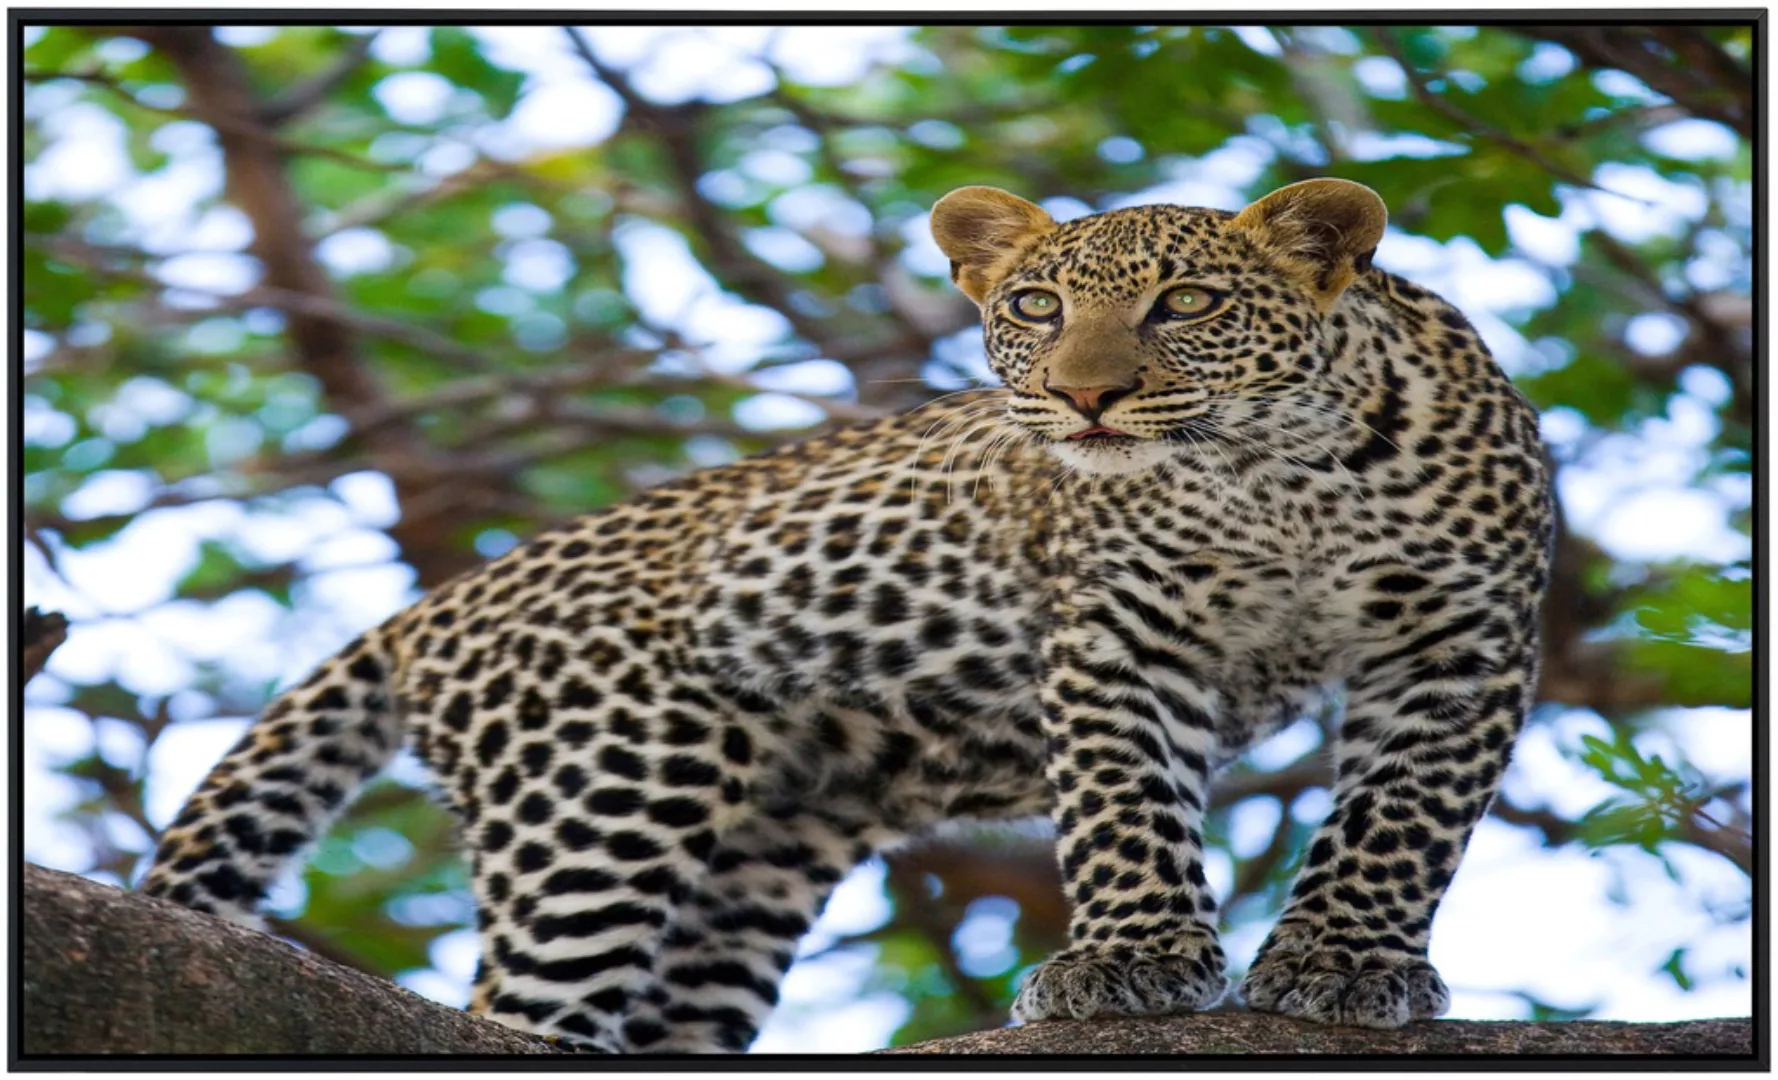 Papermoon Infrarotheizung »Leopard auf dem Baum«, sehr angenehme Strahlungs günstig online kaufen